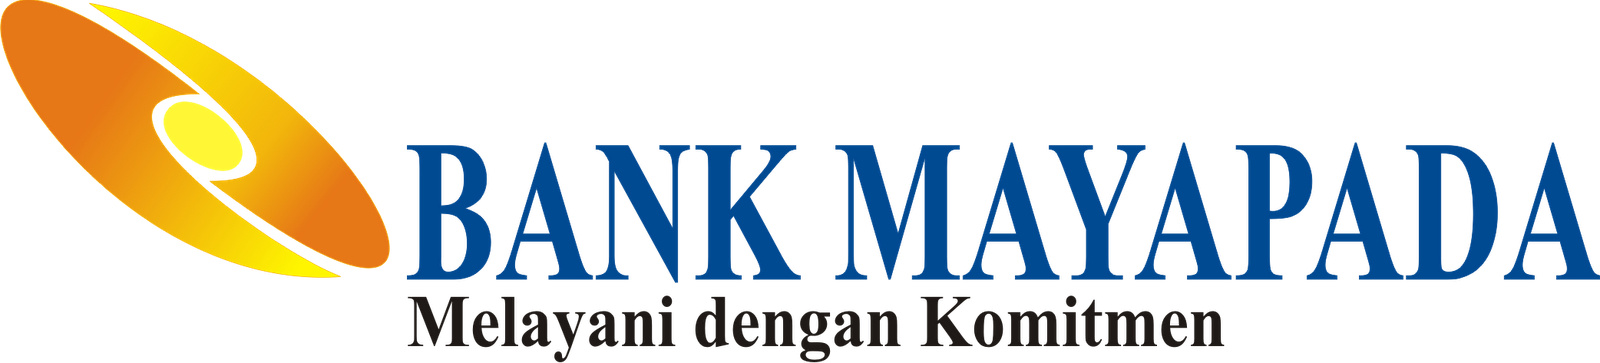 Bank Mayapada Brand Logo